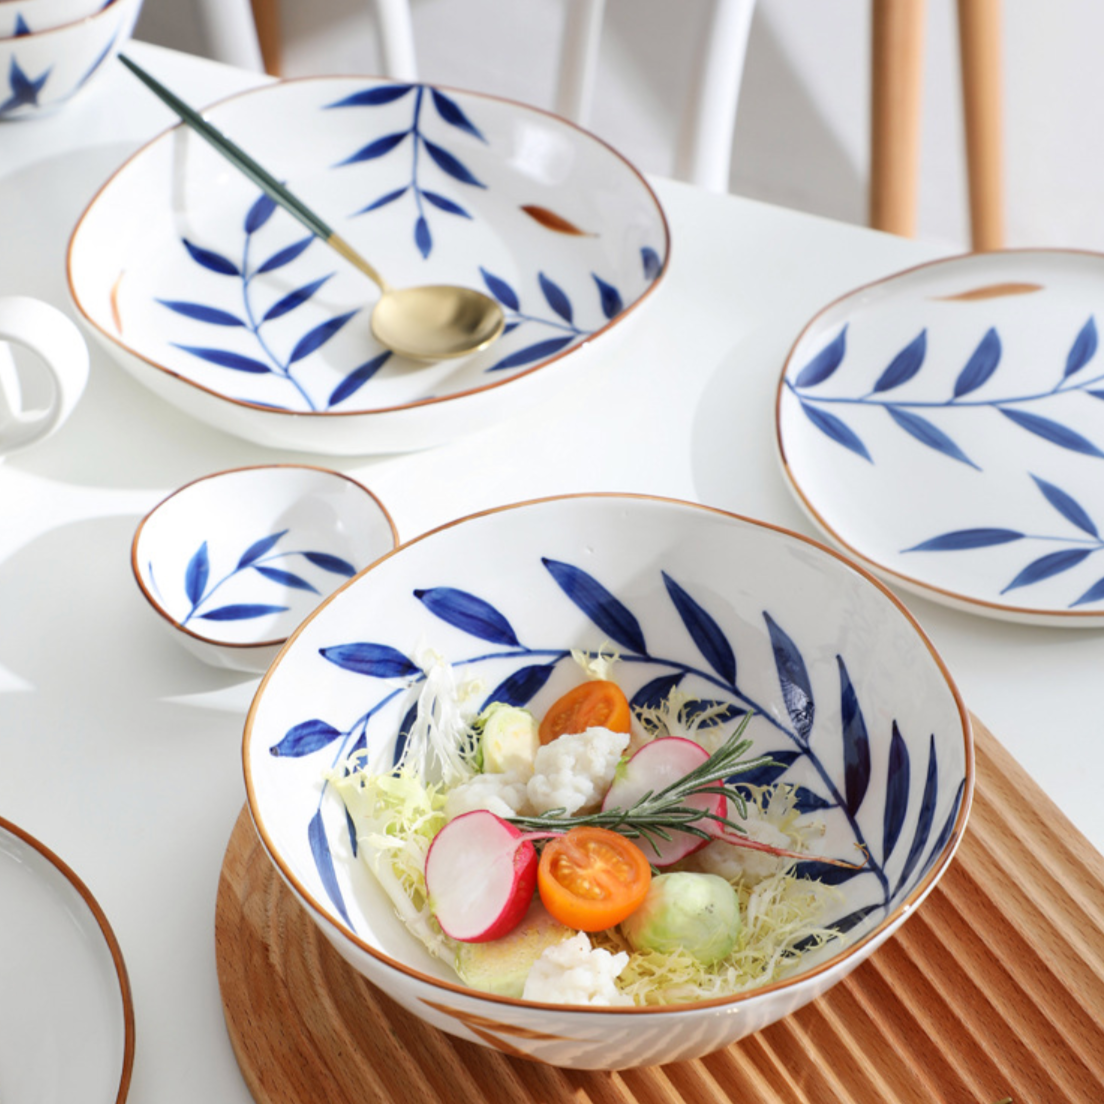 Palm Leaf Bowls - Bowl, ceramic bowl, serving bowls, noodle bowl, salad bowls, bowl for snacks, large serving bowl | Bowls for dining table & home decor